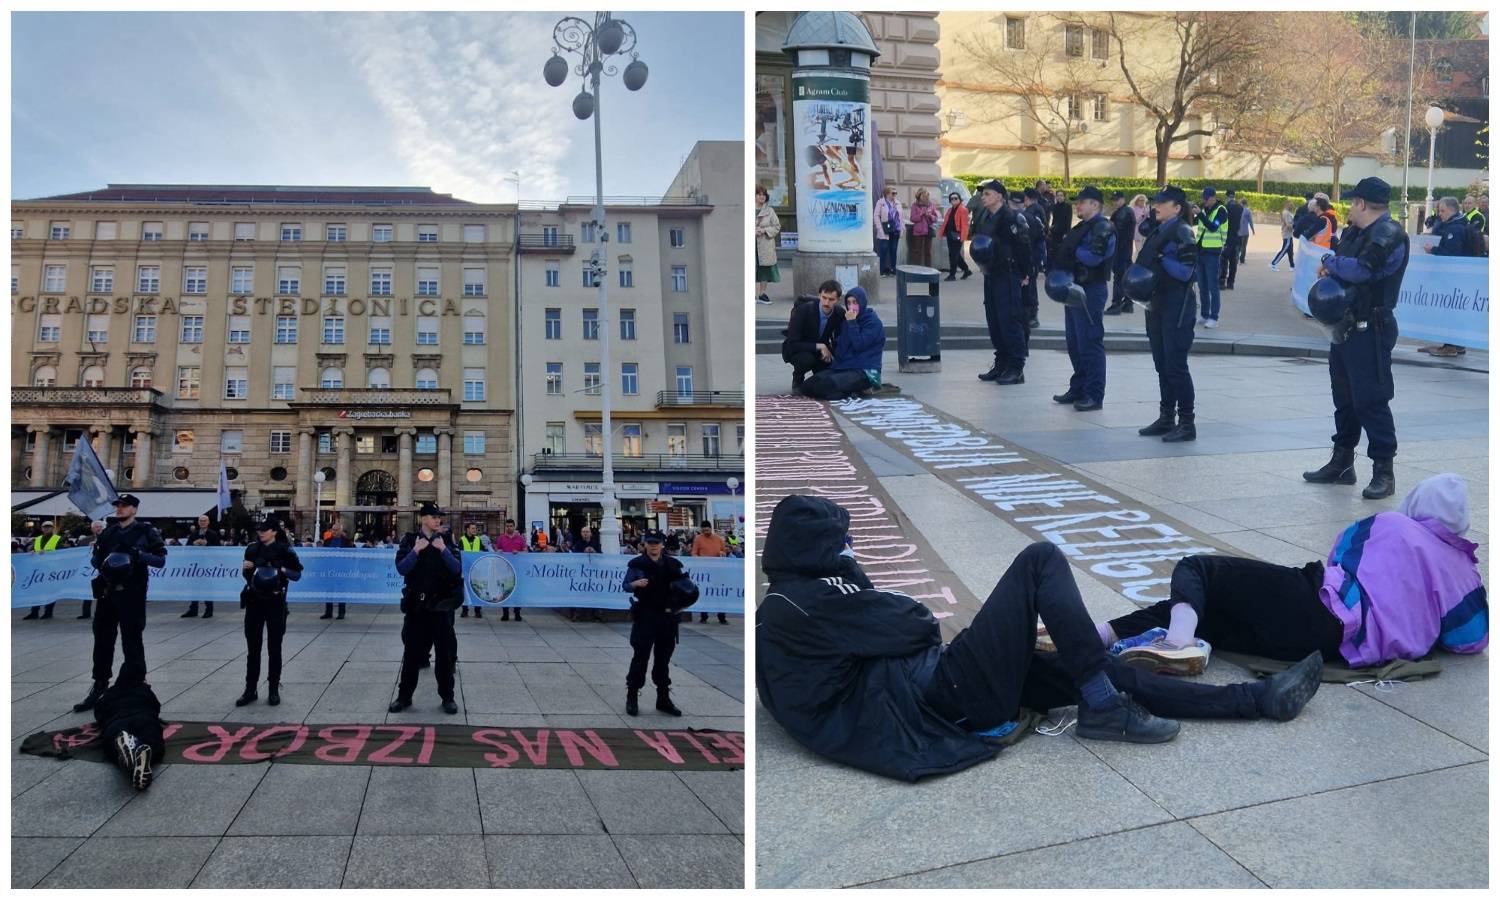 VIDEO Opet kleče i mole na Trgu u Zagrebu, prosvjednici 'lupaju'